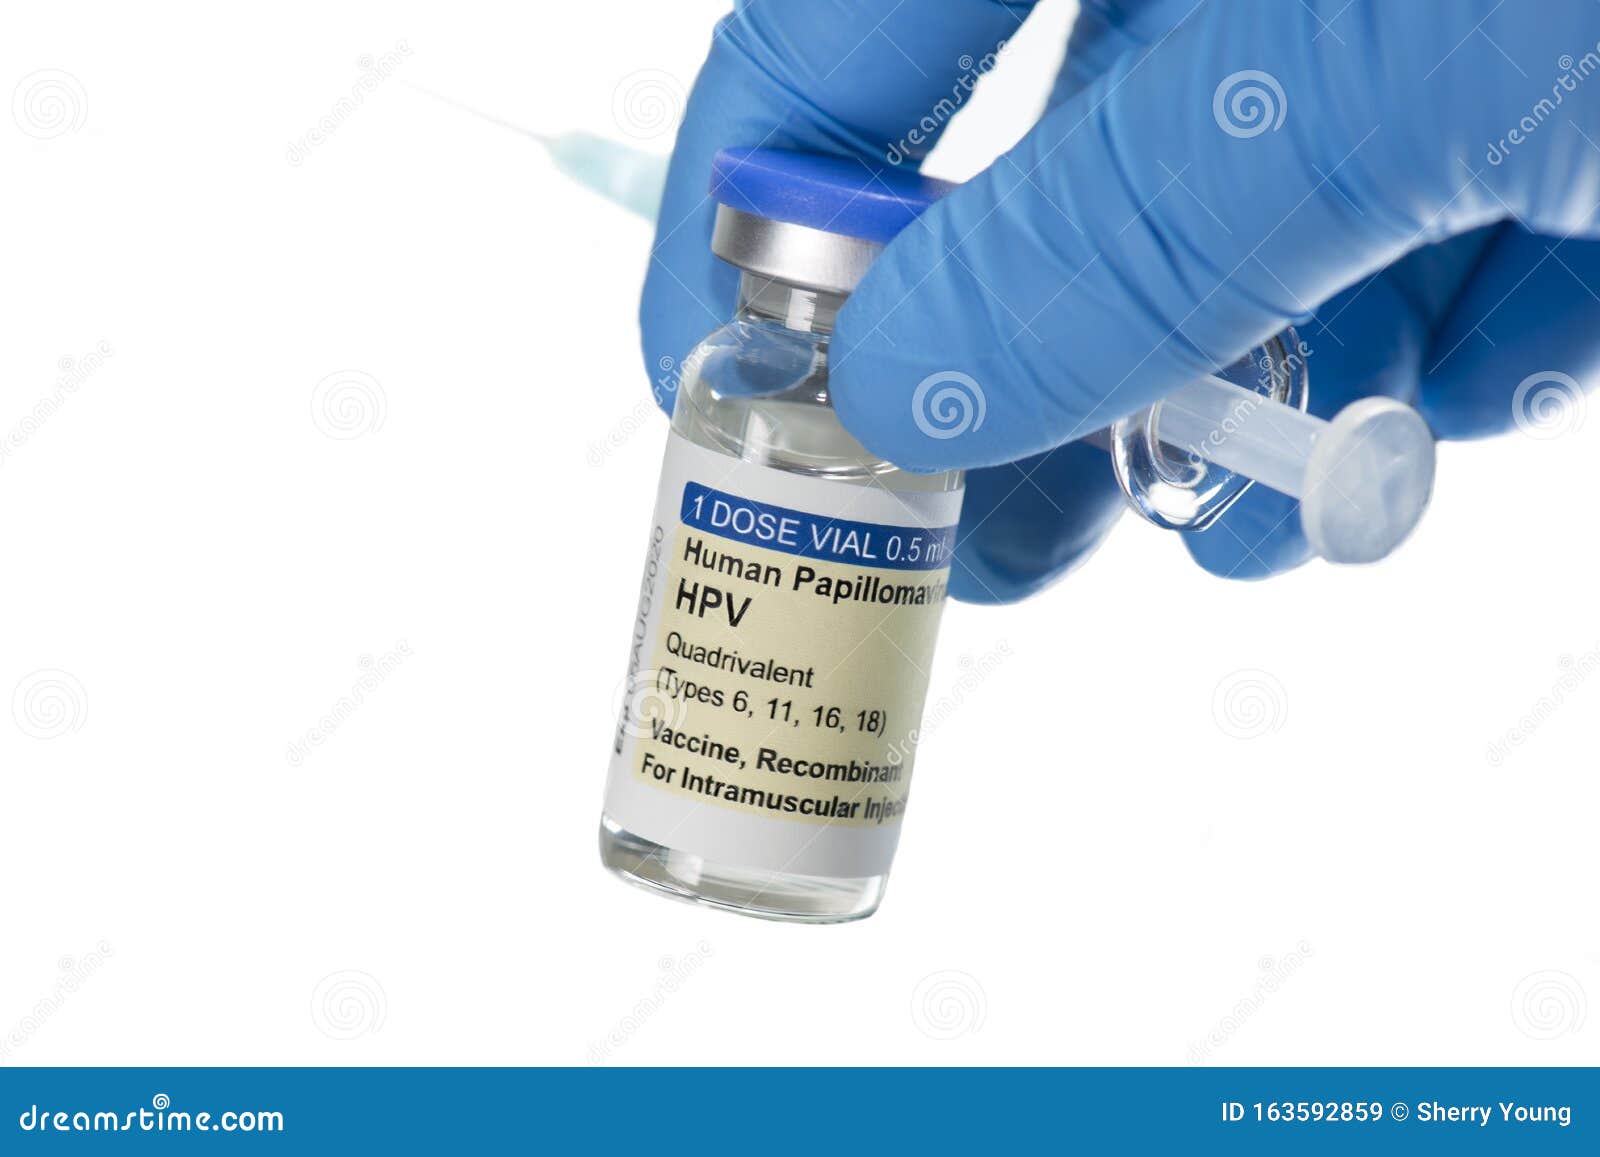 Hpv virus and vaccine